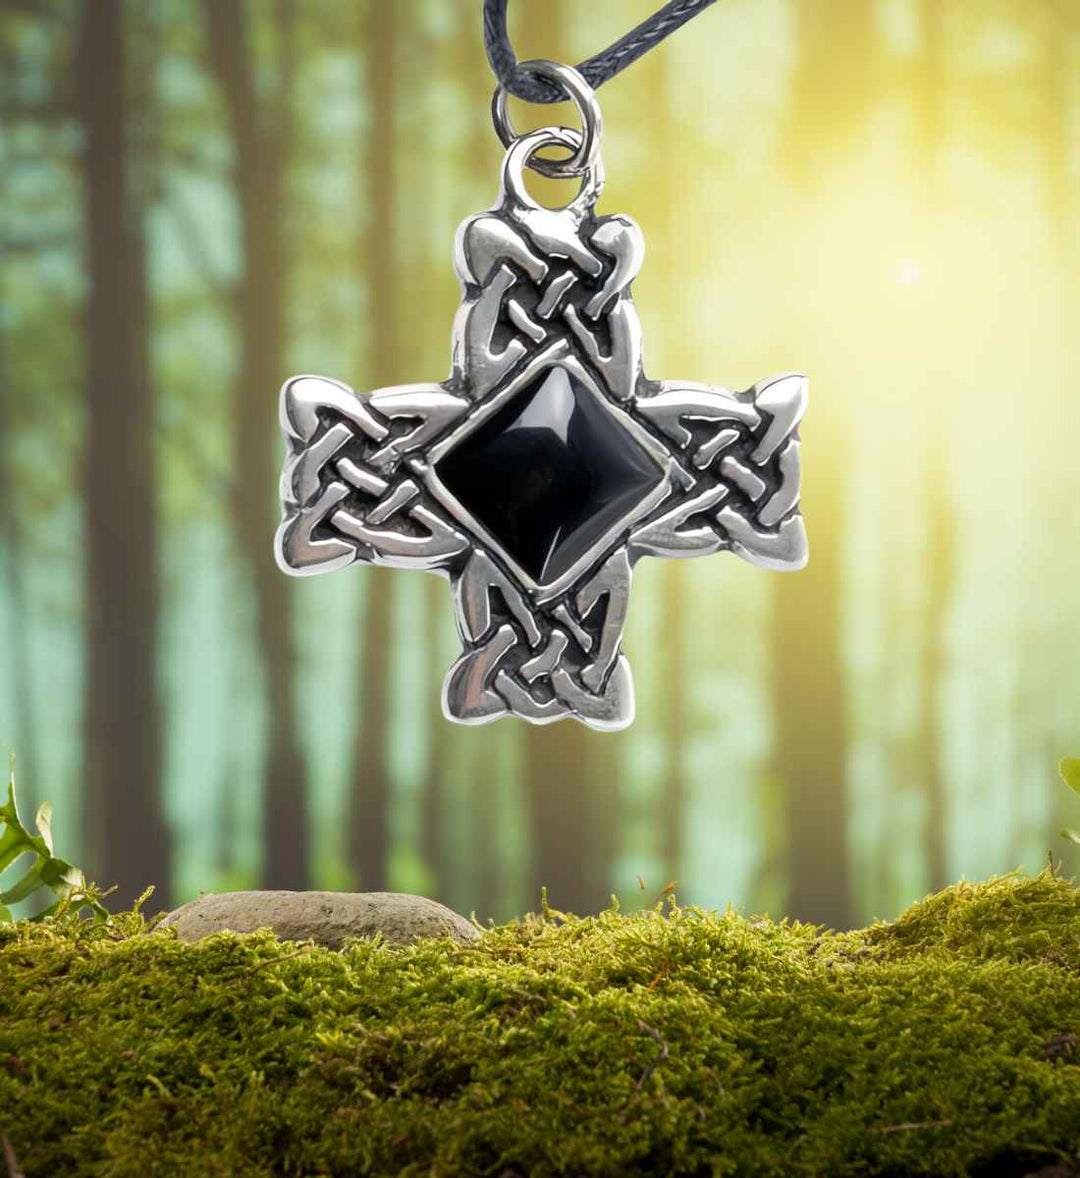 Silbernes Kreuz der Druiden, präsentiert auf einem naturbelassenen Moosbett im Wald, hervorhebend seine mystische Verbindung zur Natur. Runental.de